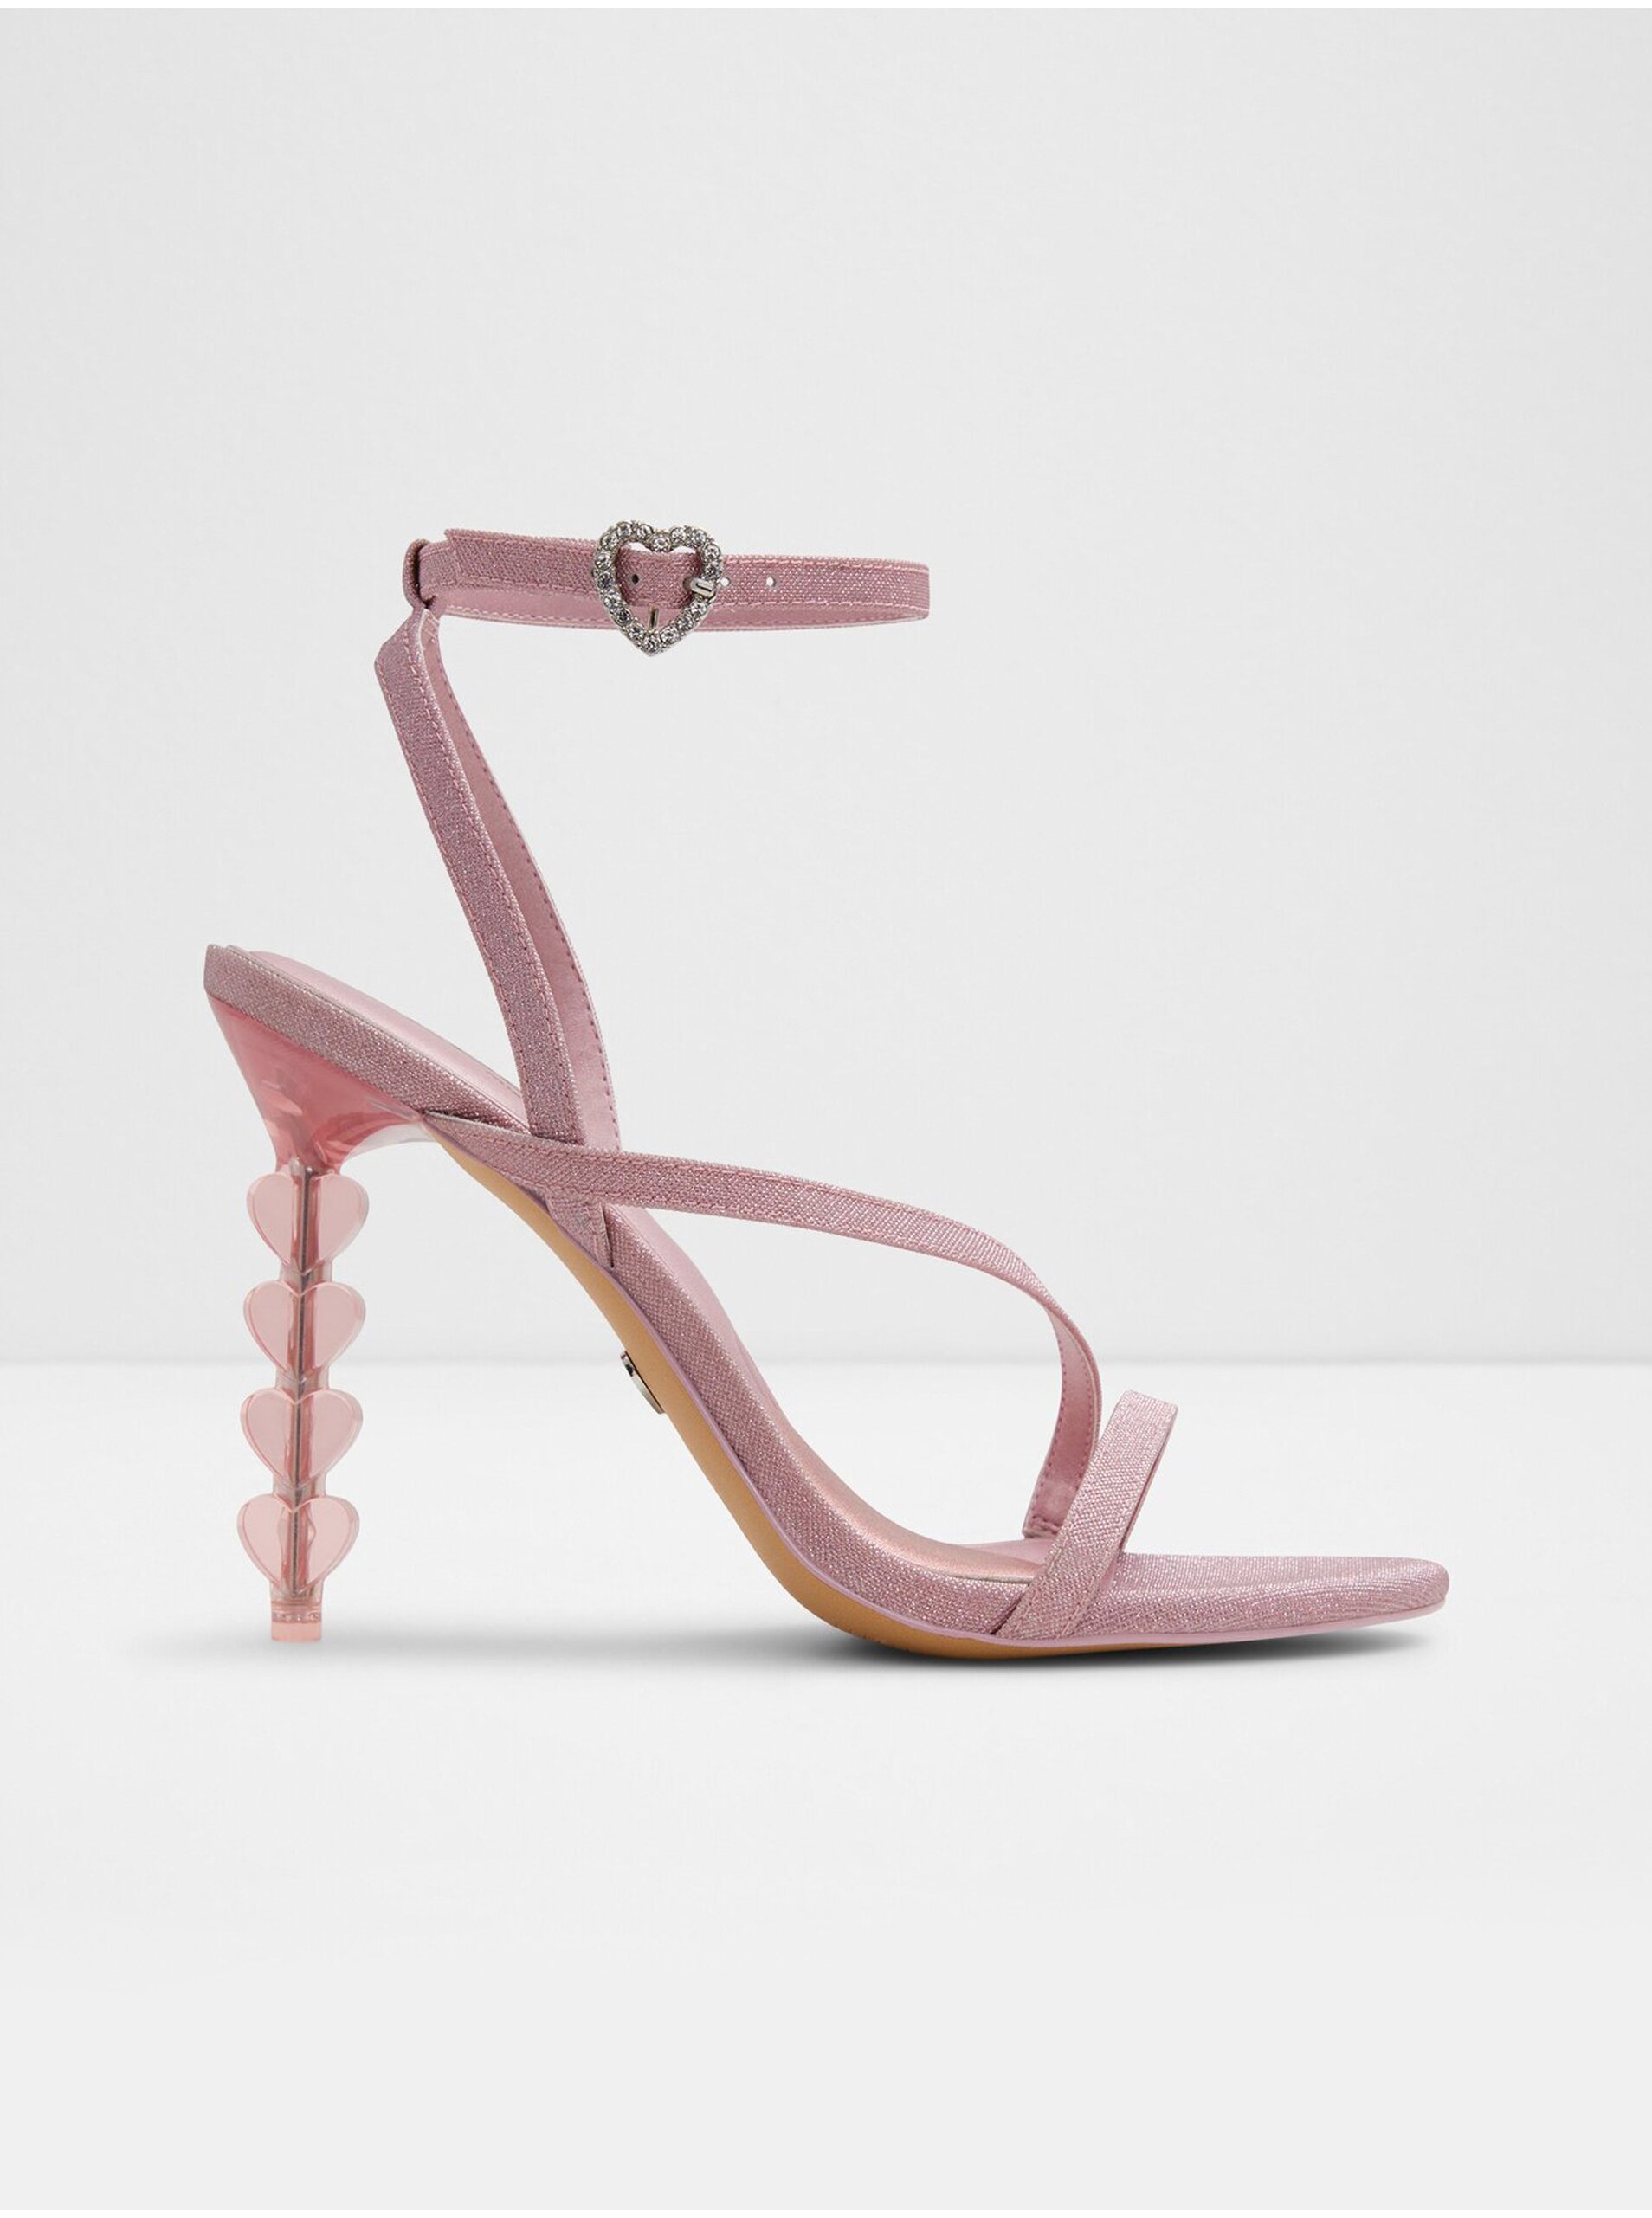 Lacno Ružové dámske sandále na ihličkovom podpätku ALDO Tiffania